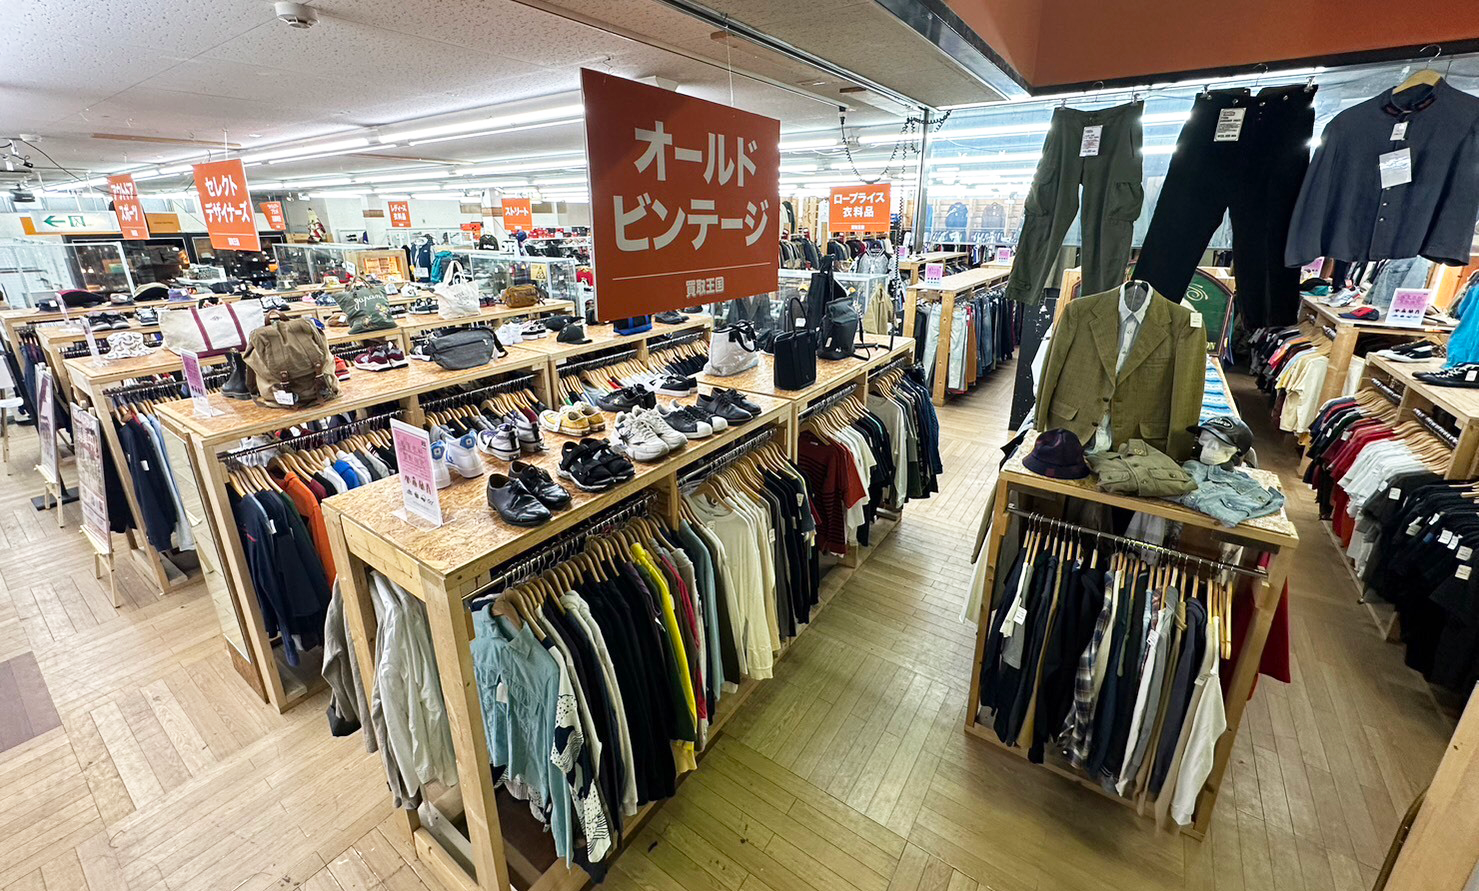 メンズファッションのアメリカ古着コーナーが売場を広げております。